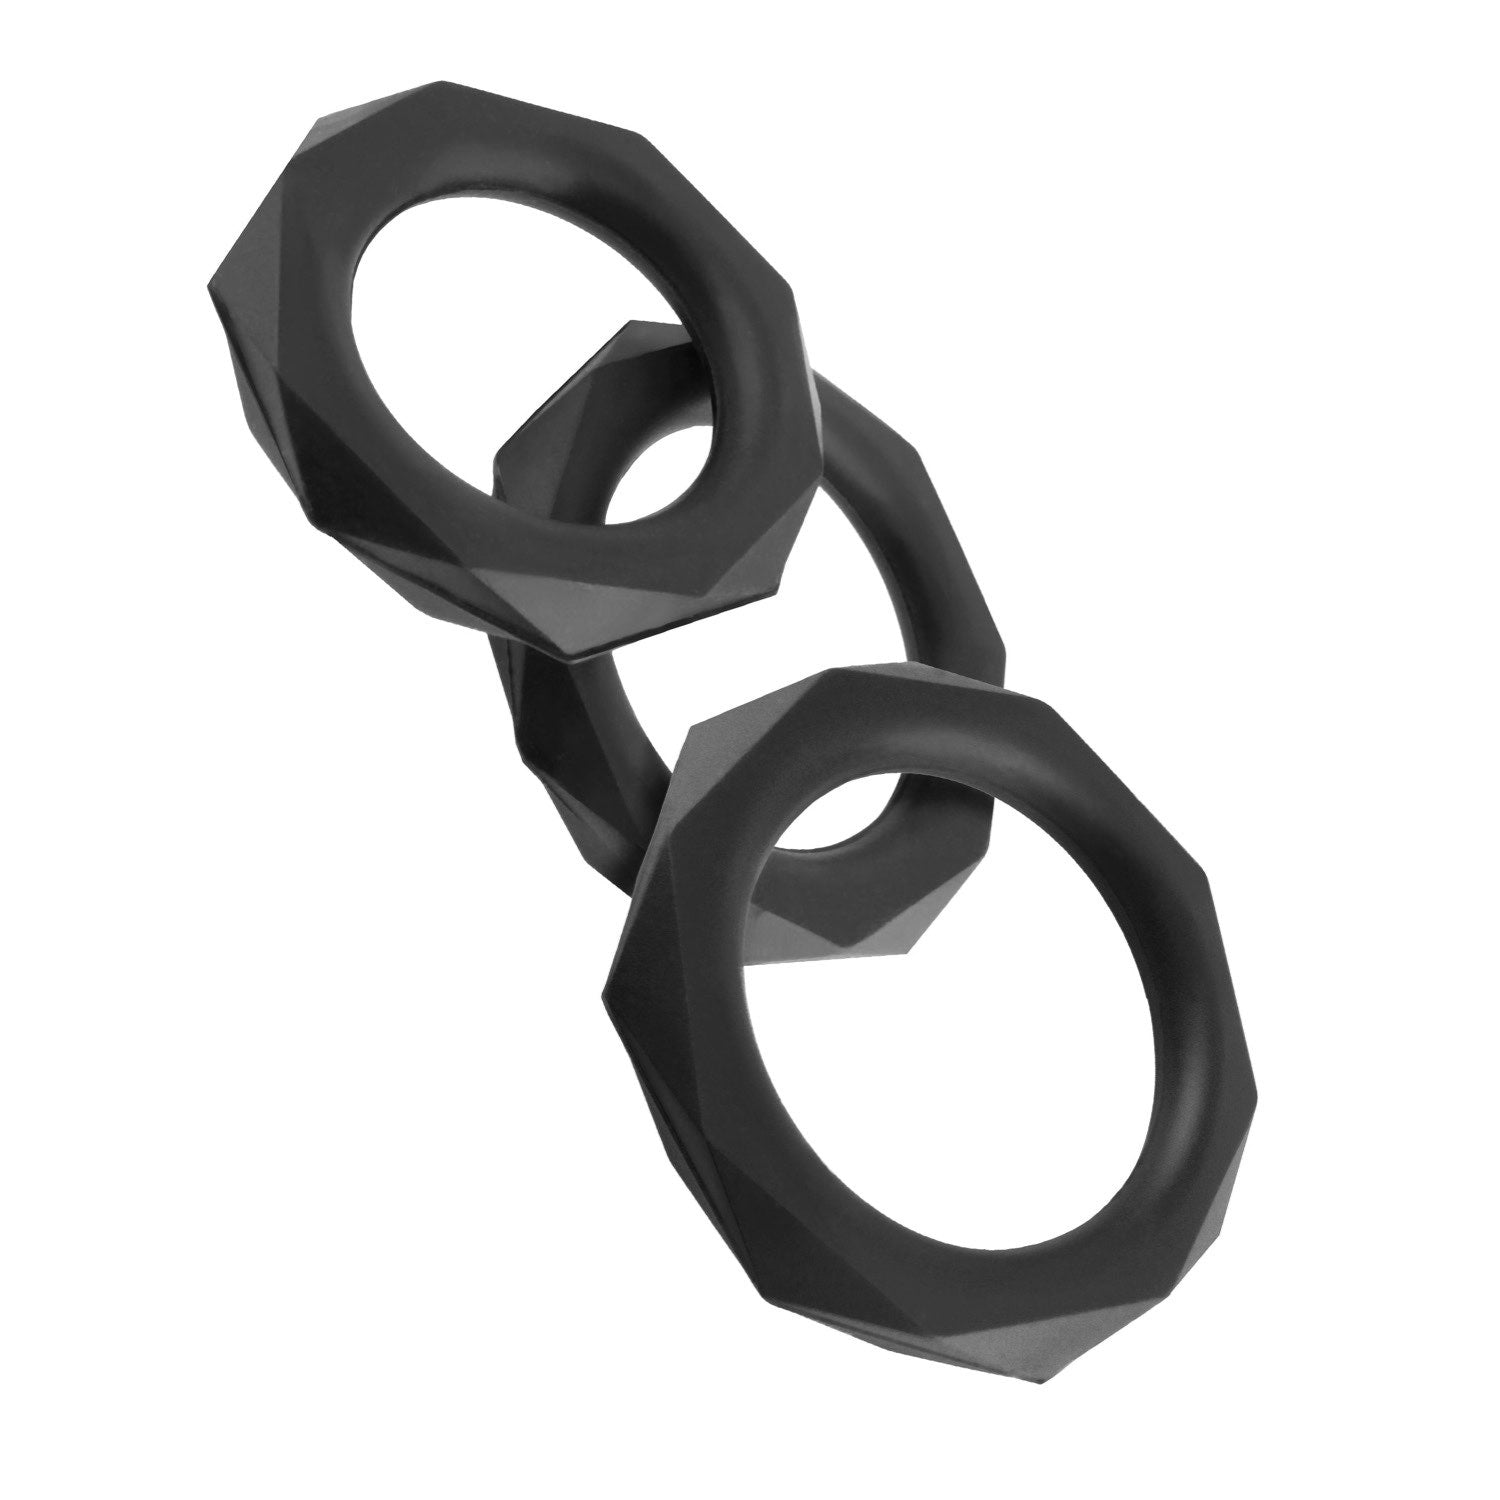 幻想C环 硅胶设计师耐力套装 - 黑色阴茎环 - 3 种尺寸套装 by Pipedream